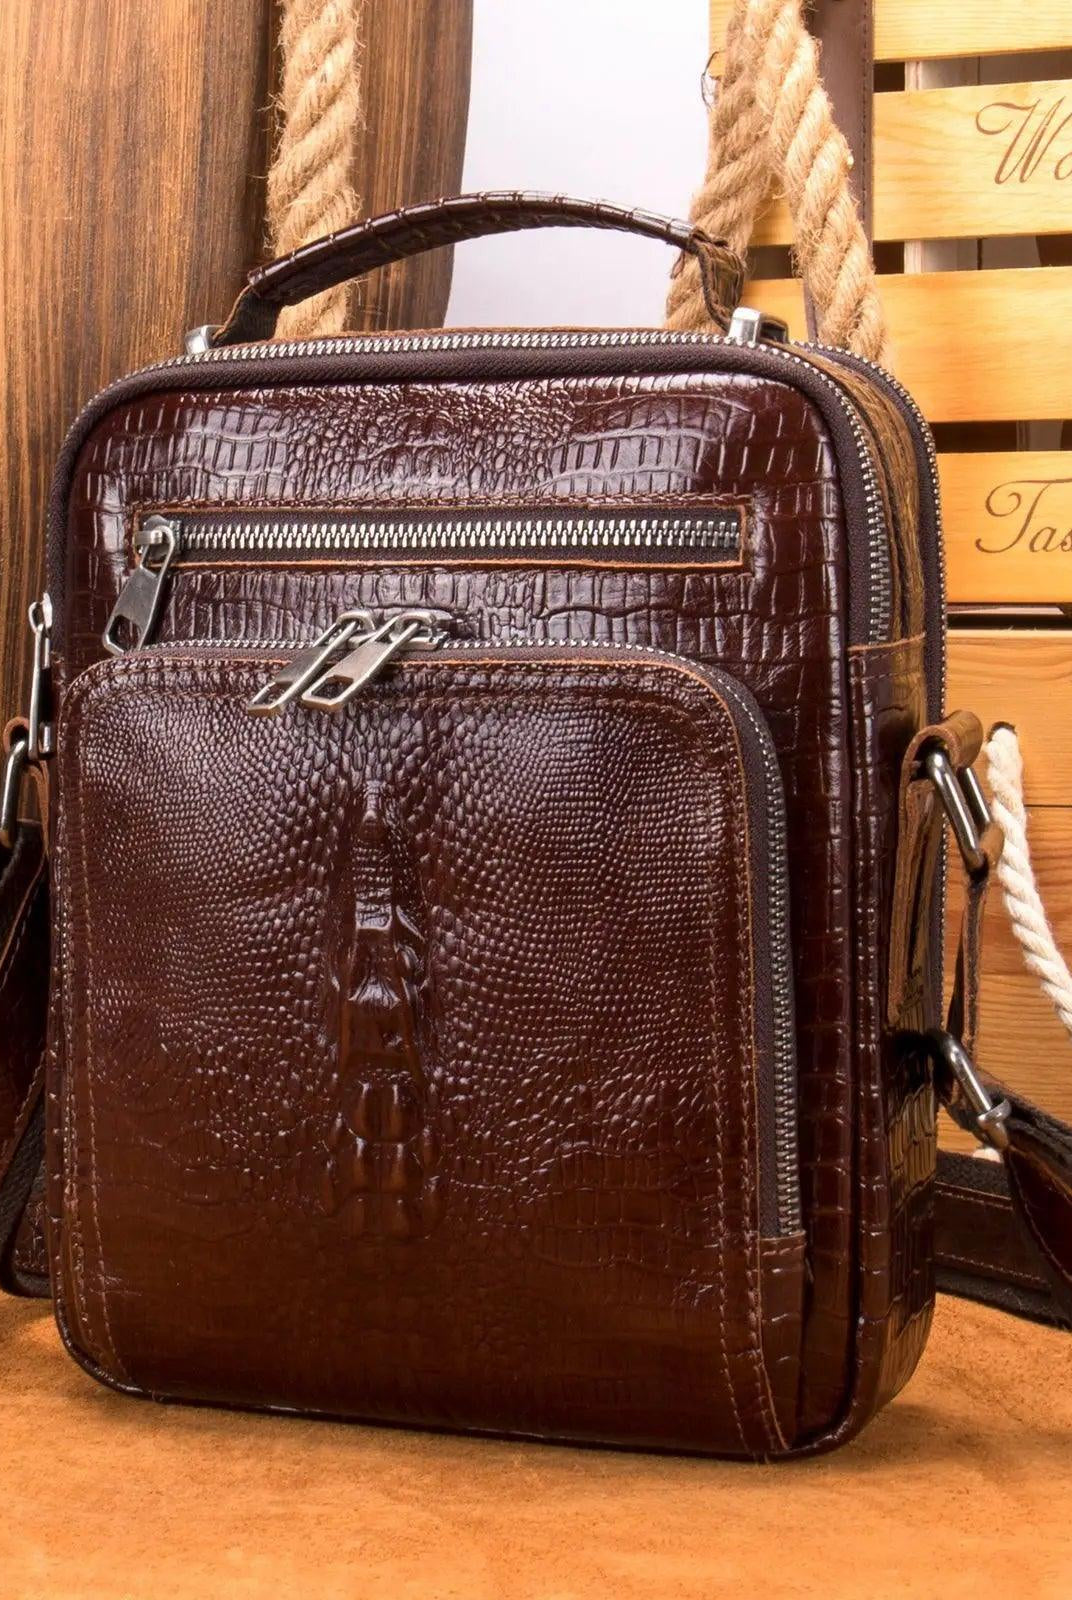 Luggage & Bags - Shoulder/Messenger Bags Retro Style Leather Shoulder Bag Mens Crossbody Bags Messenger Bag